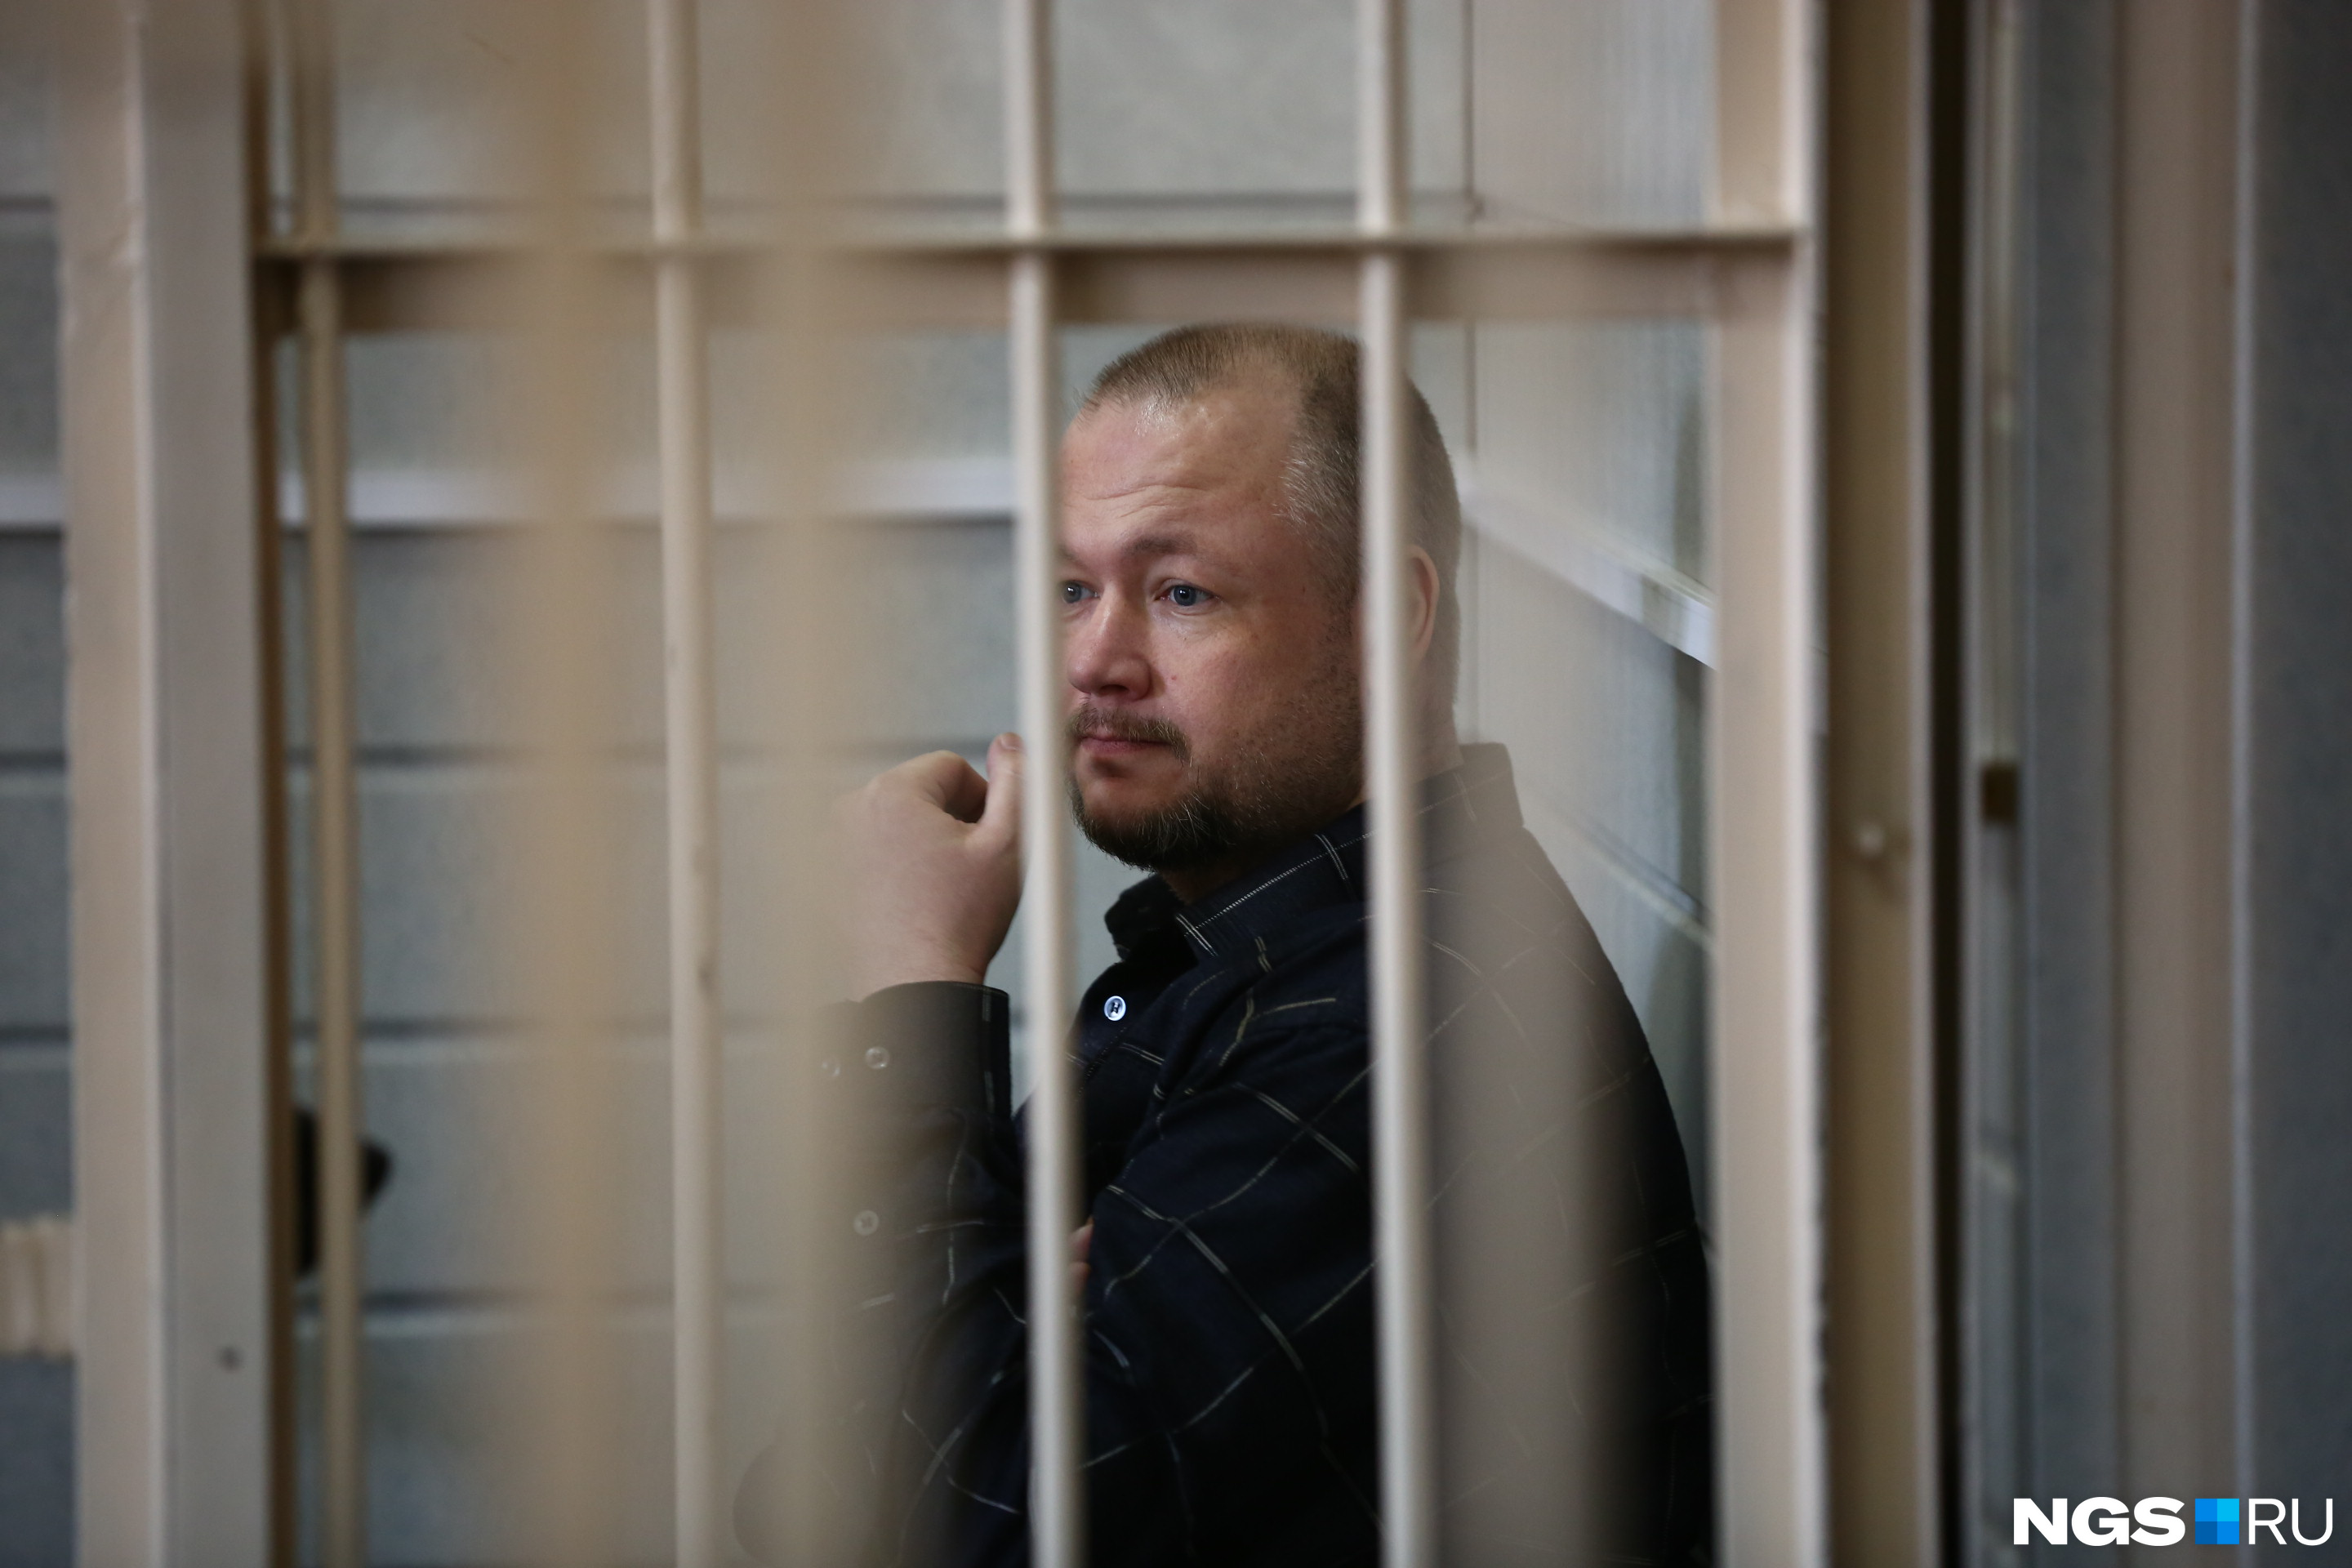 Вячеслава Добрынина решено отправить в психиатрический стационар